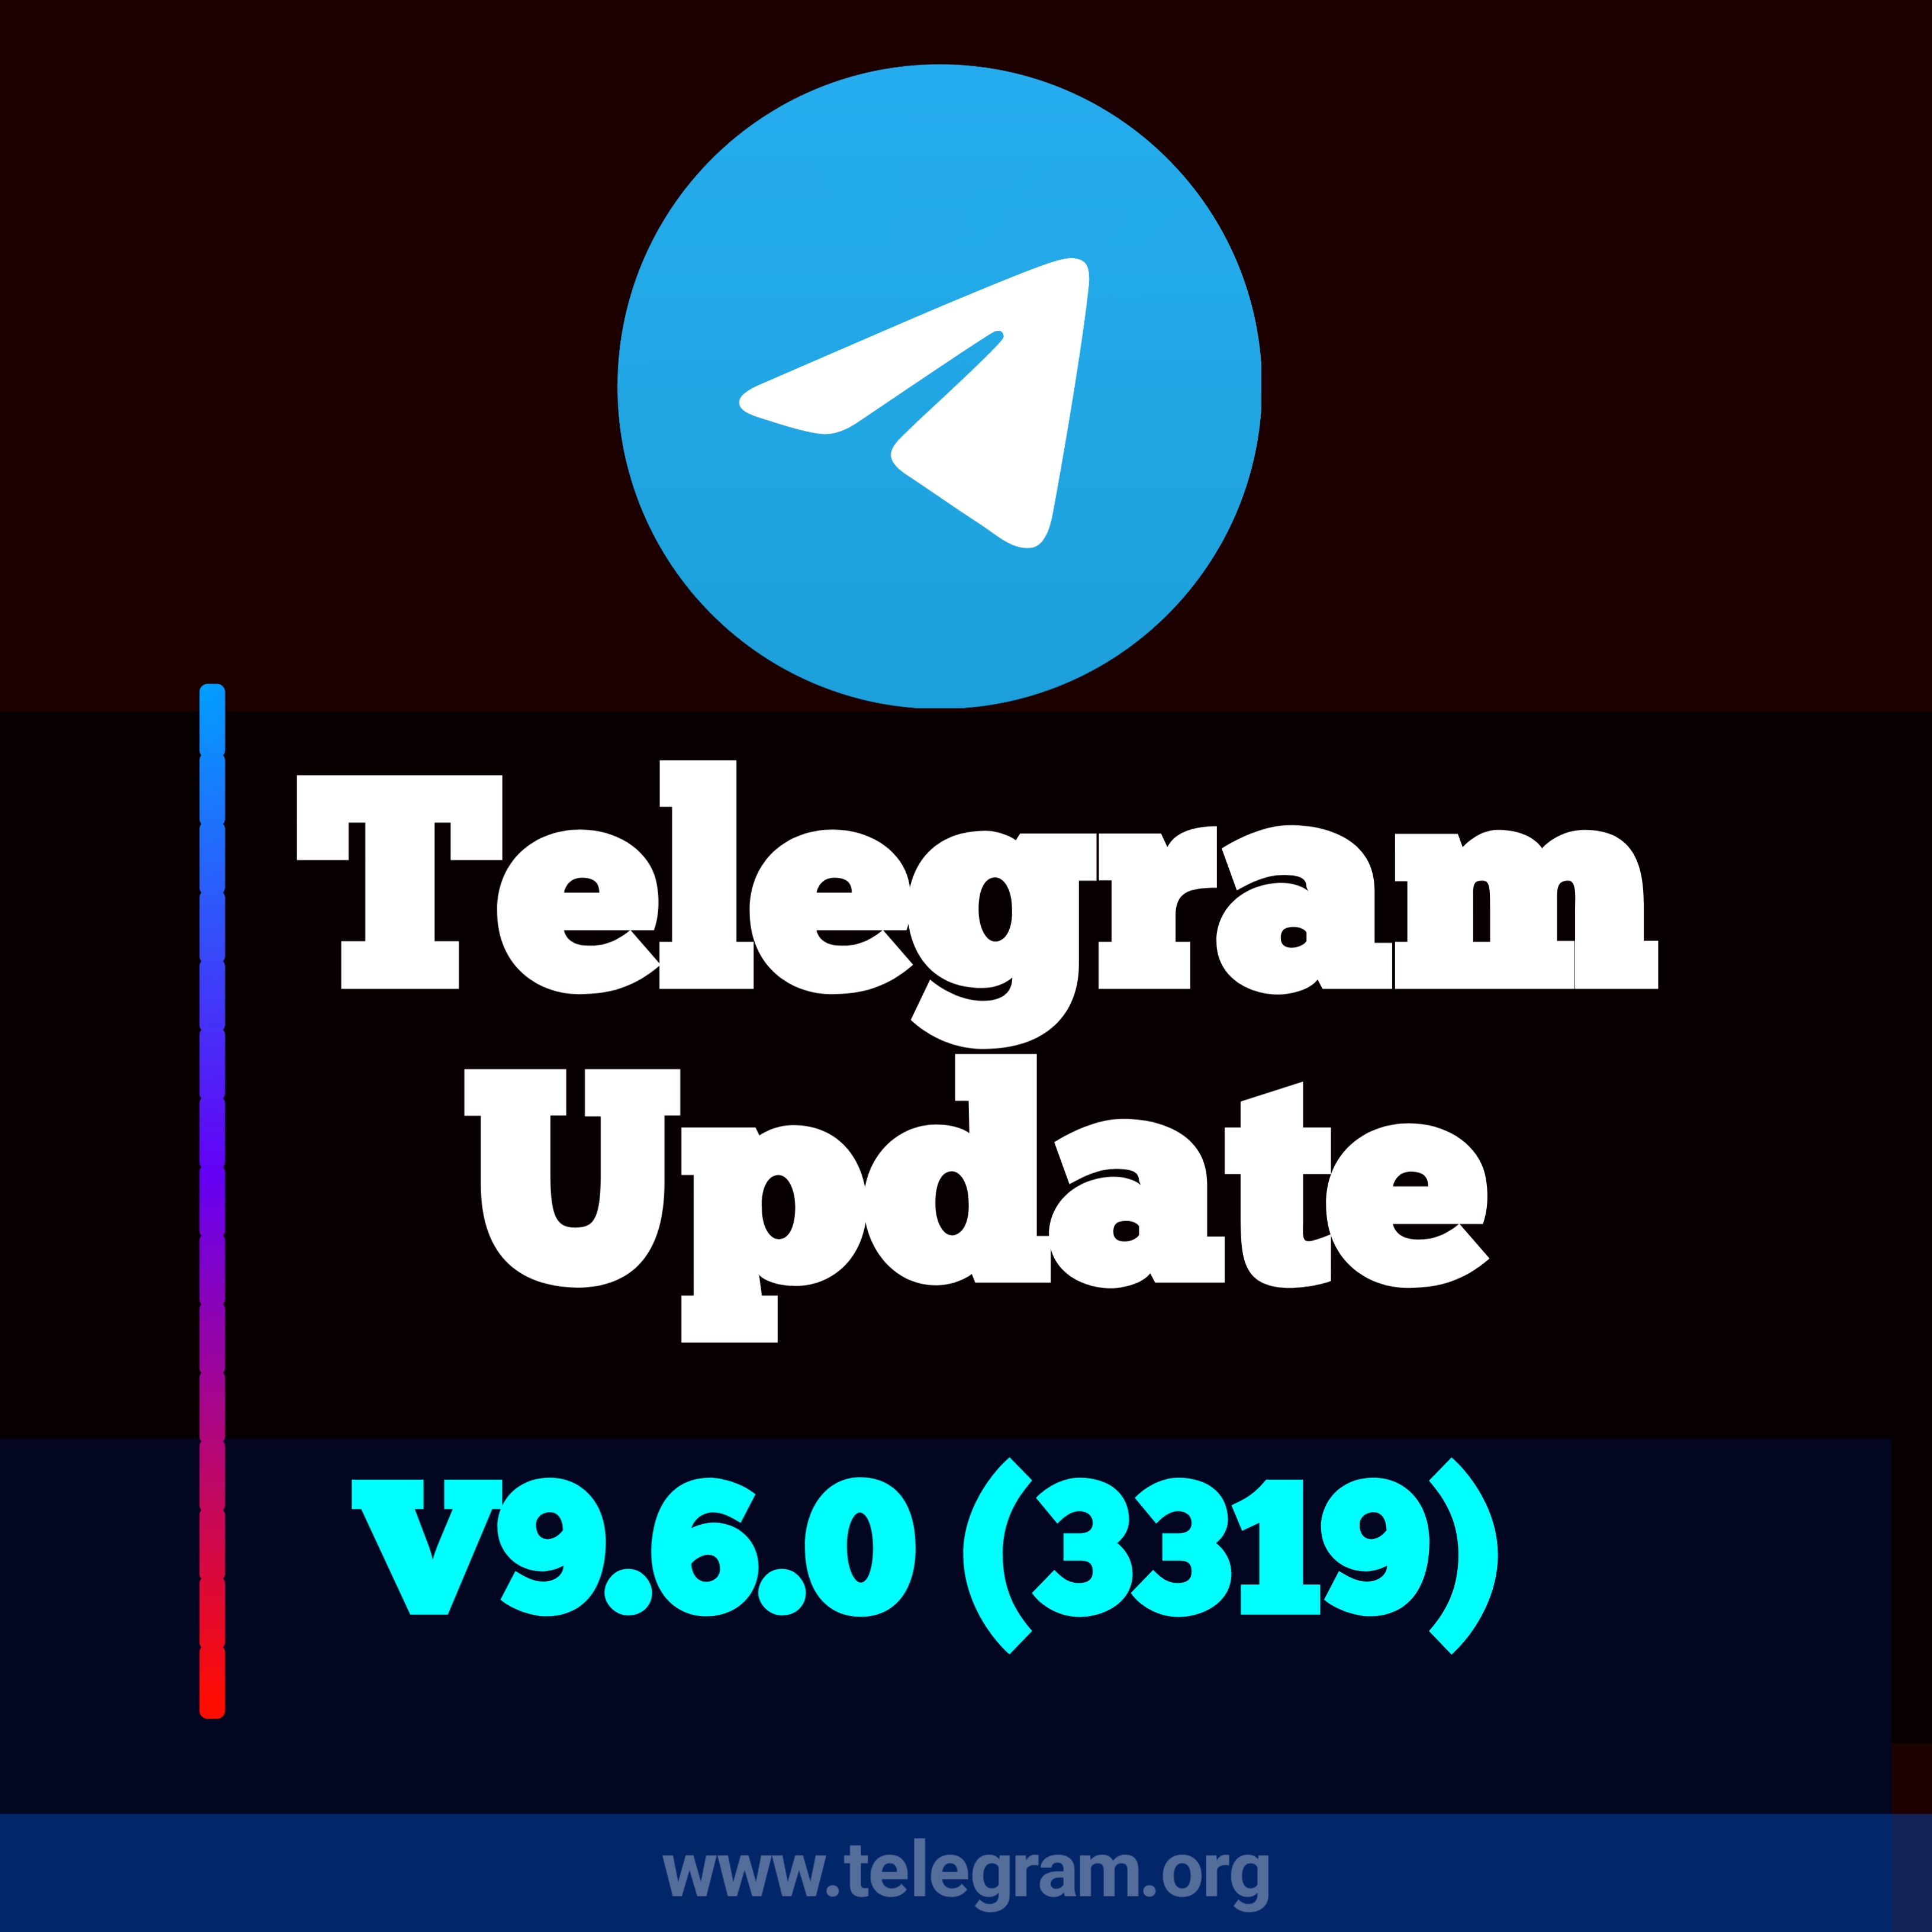 平台概述：高效安全的Telegram账号购买门户网站